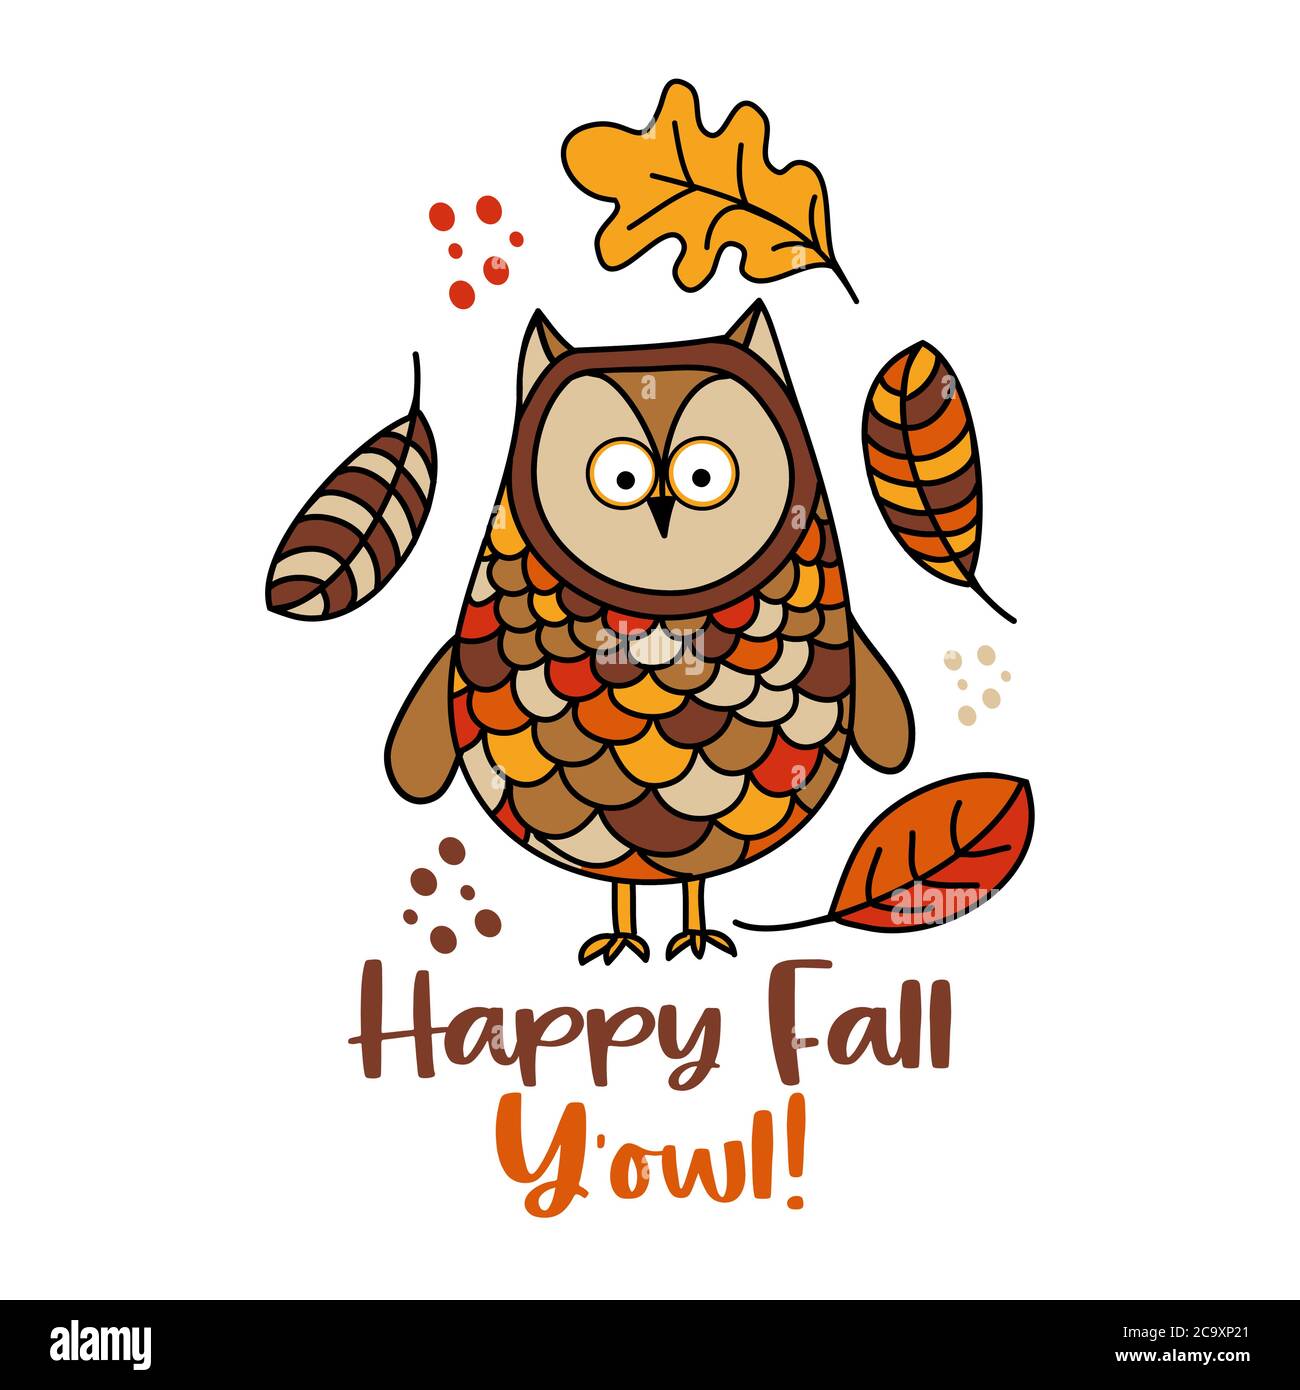 Happy Fall y'all - illustration vectorielle dessinée à la main avec chouette hibou et feuilles en chute. Affiche couleur d'automne. Bon pour les affiches, les cartes de vœux, les bannières, te Illustration de Vecteur